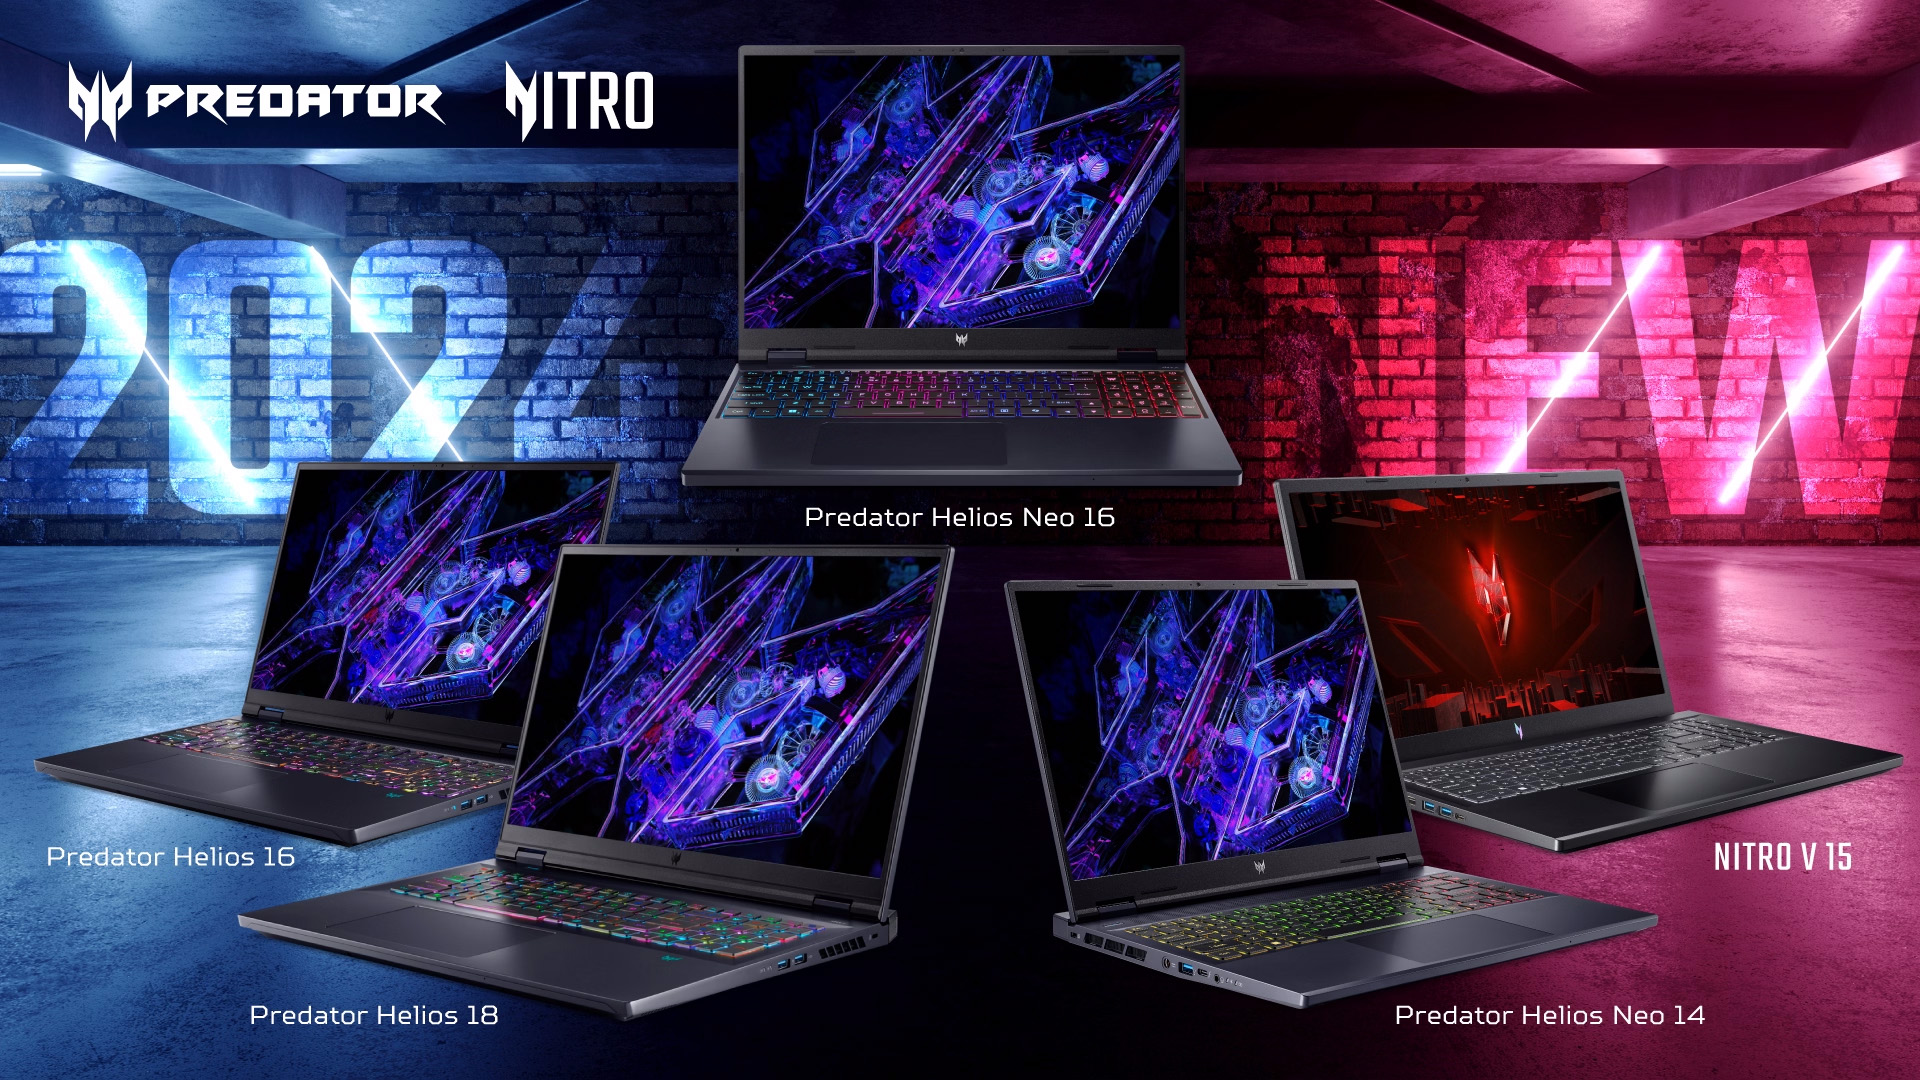 日本エイサー、PredatorとNitroブランドから5モデルのゲーミングノートPCの発売開始を発表